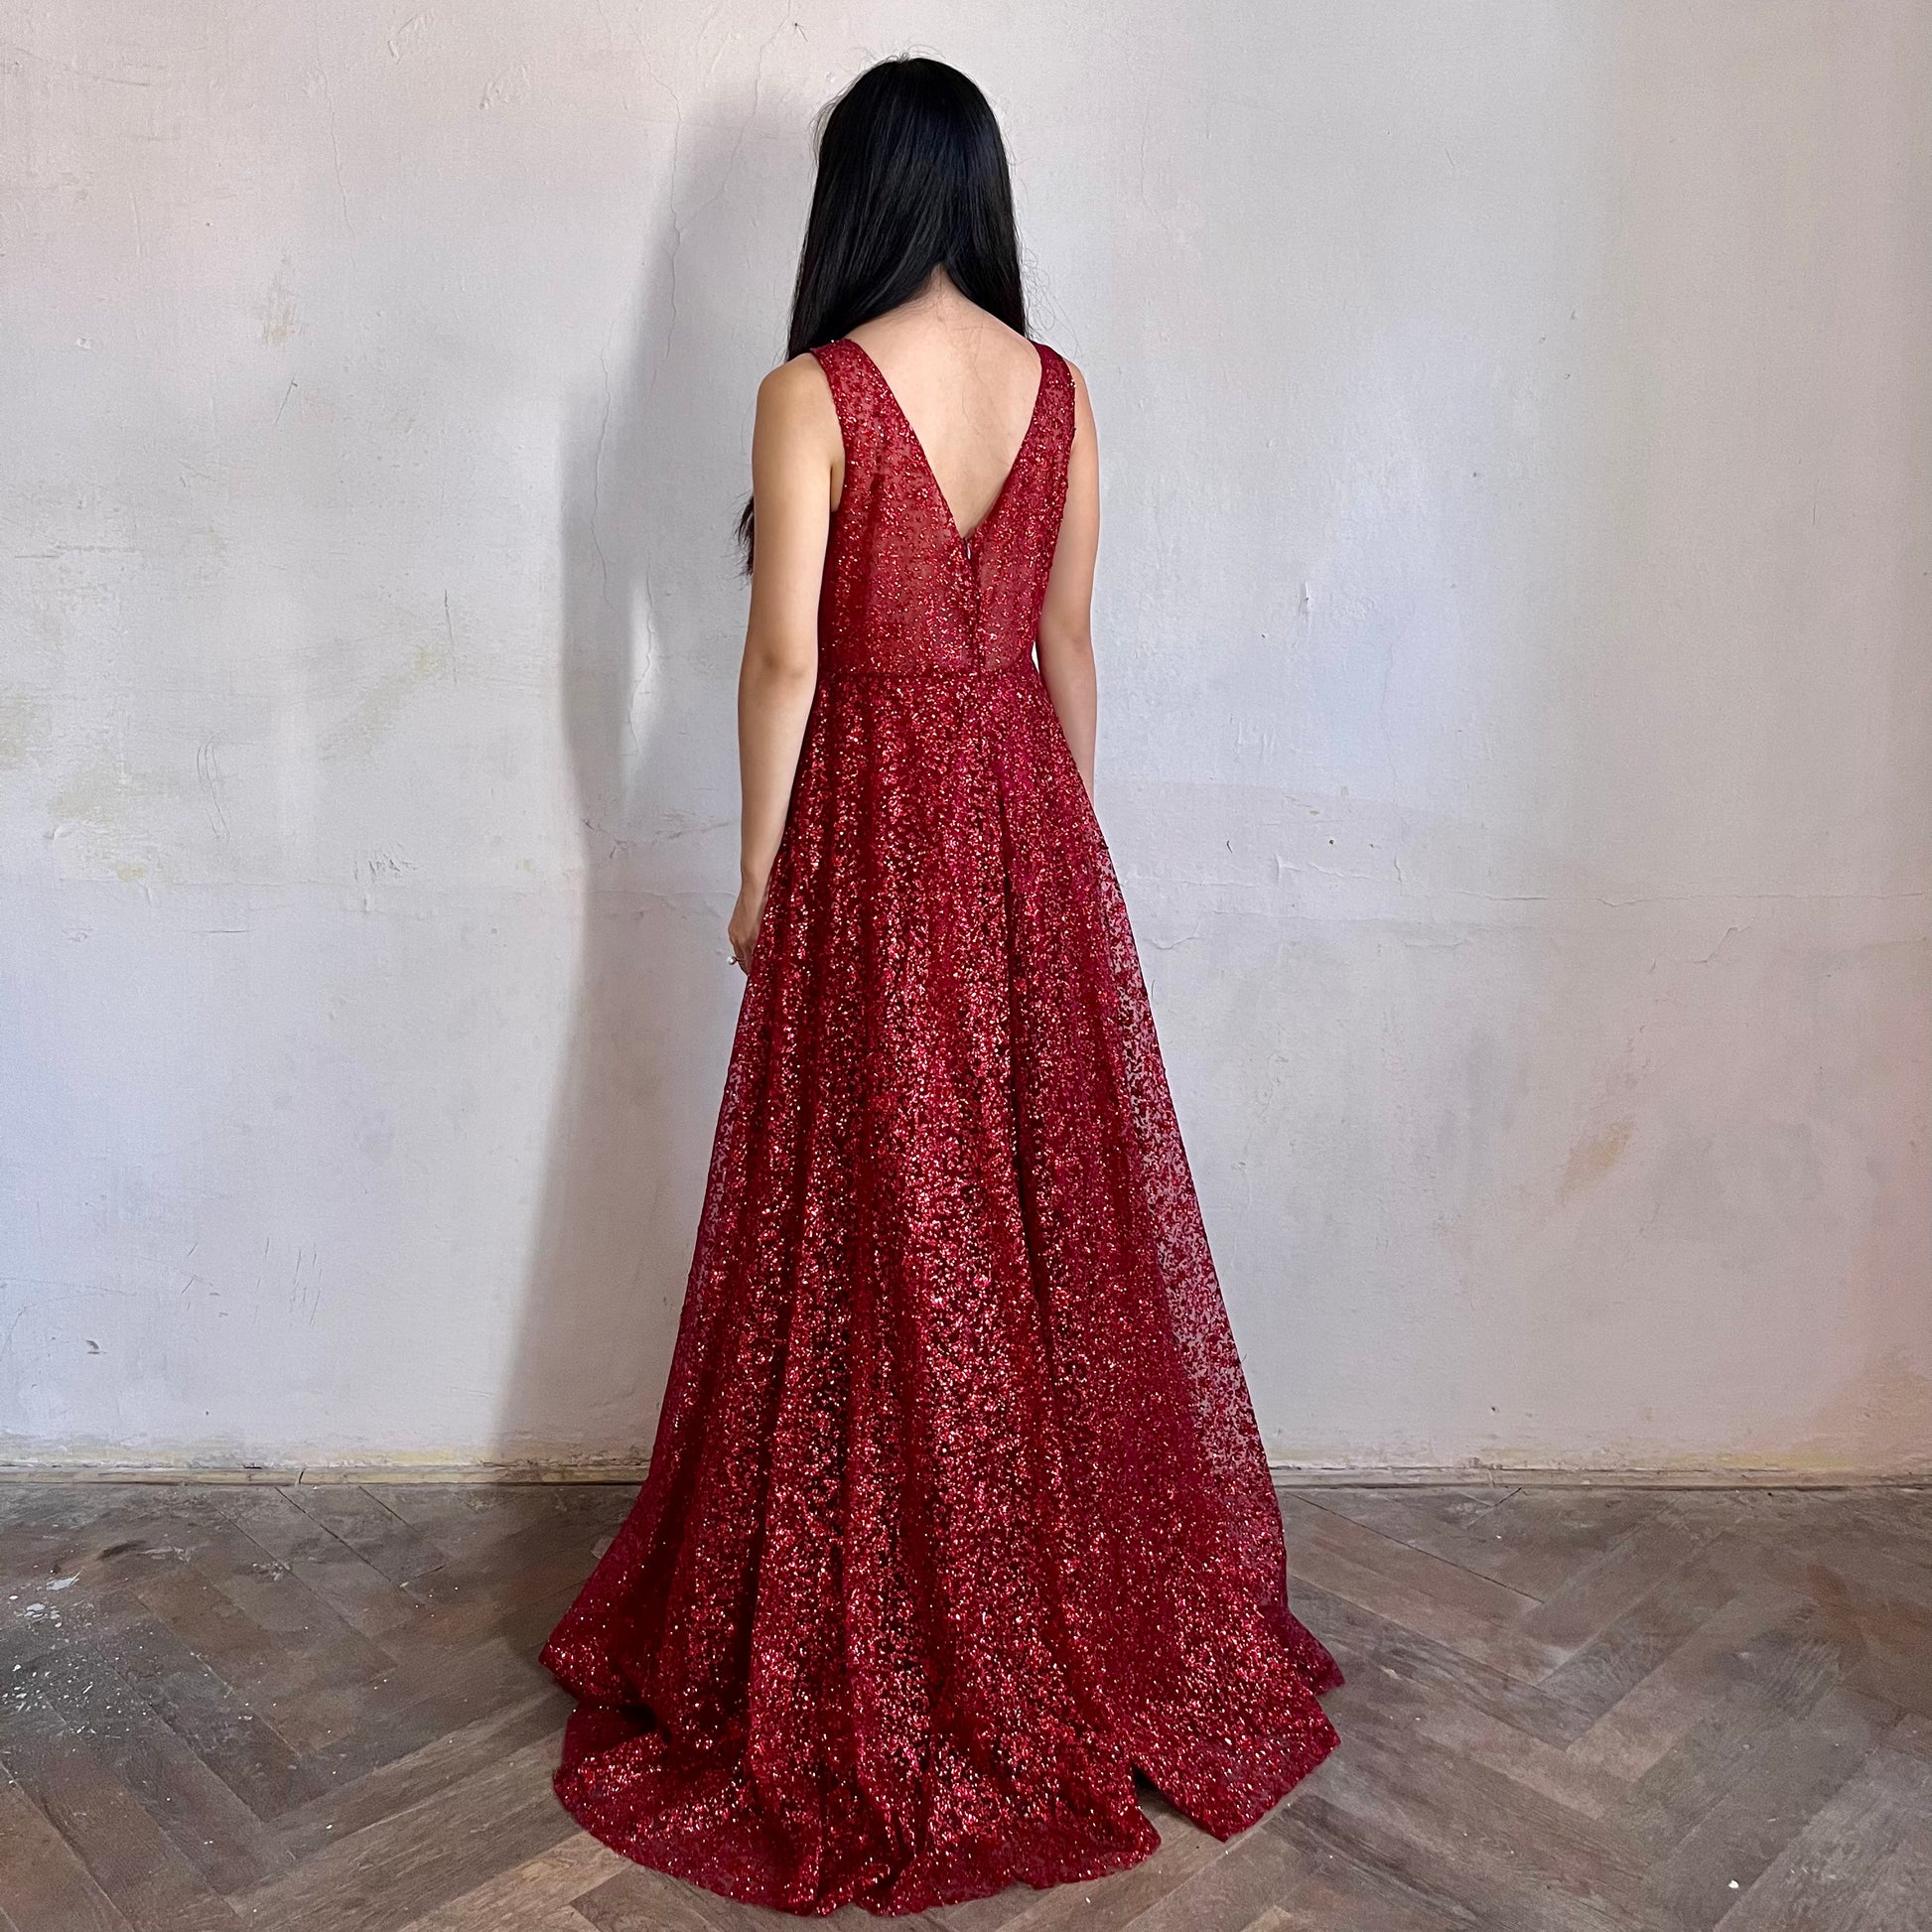 Modelka asijského původu pózující z boku oblečená v červených třpytivých společenských šatech